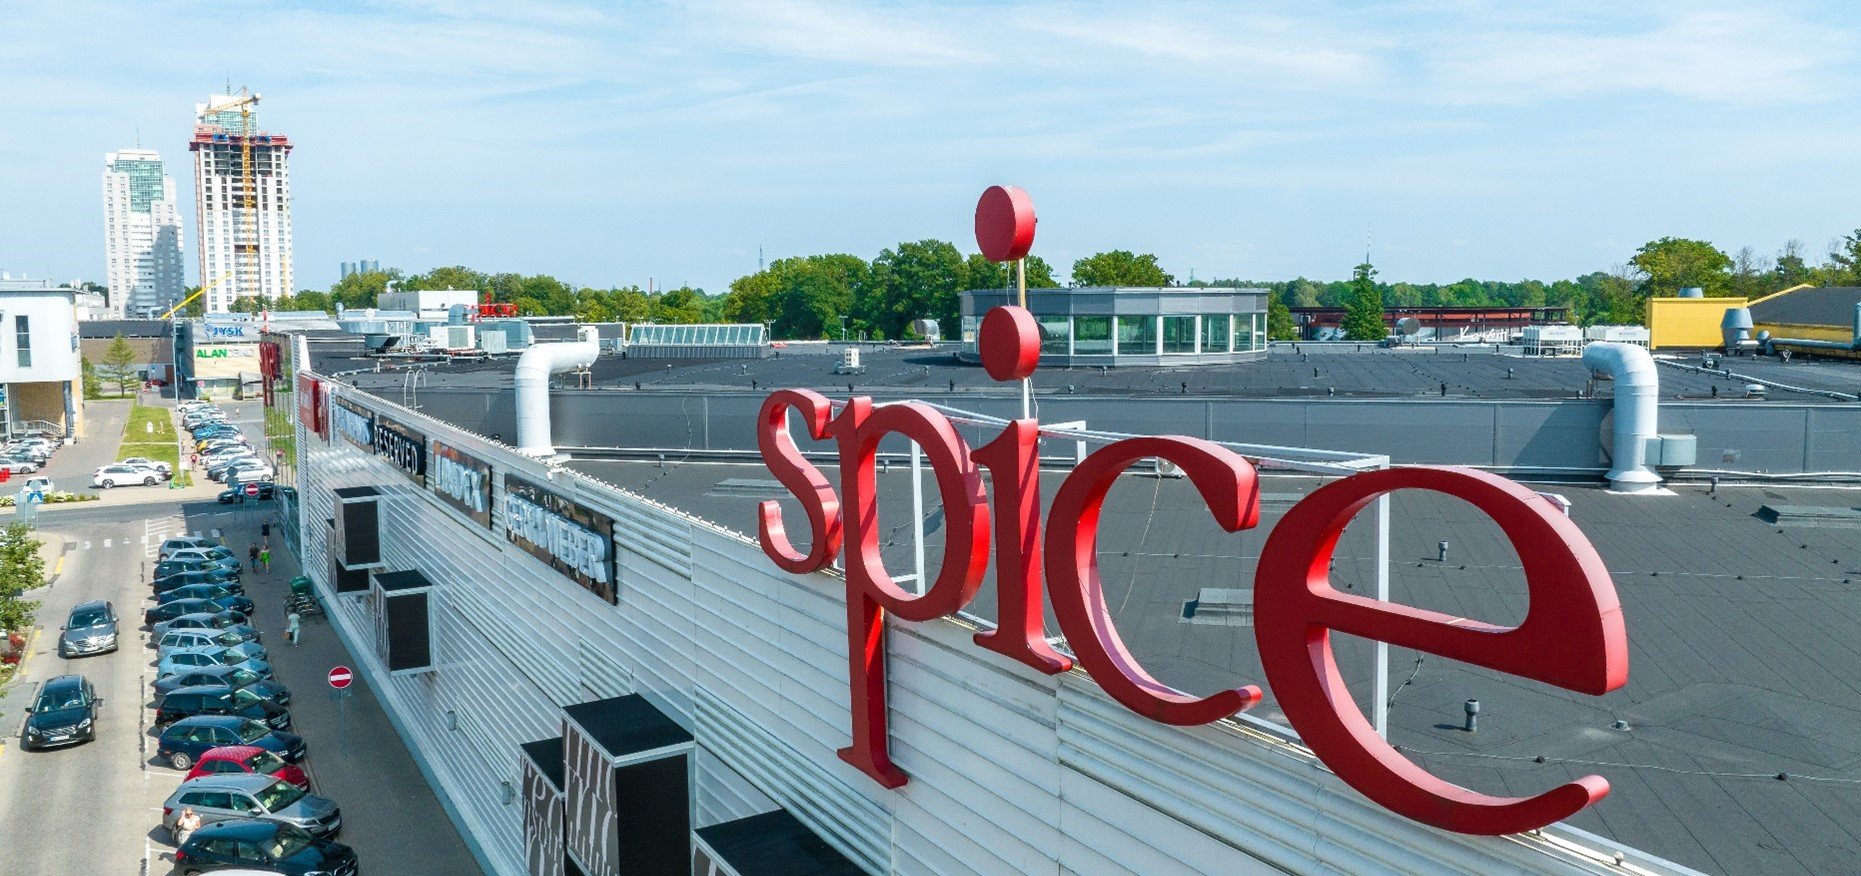 Tirdzniecības centrā “Spice” tiks atklāts "MyFitness" sporta klubs